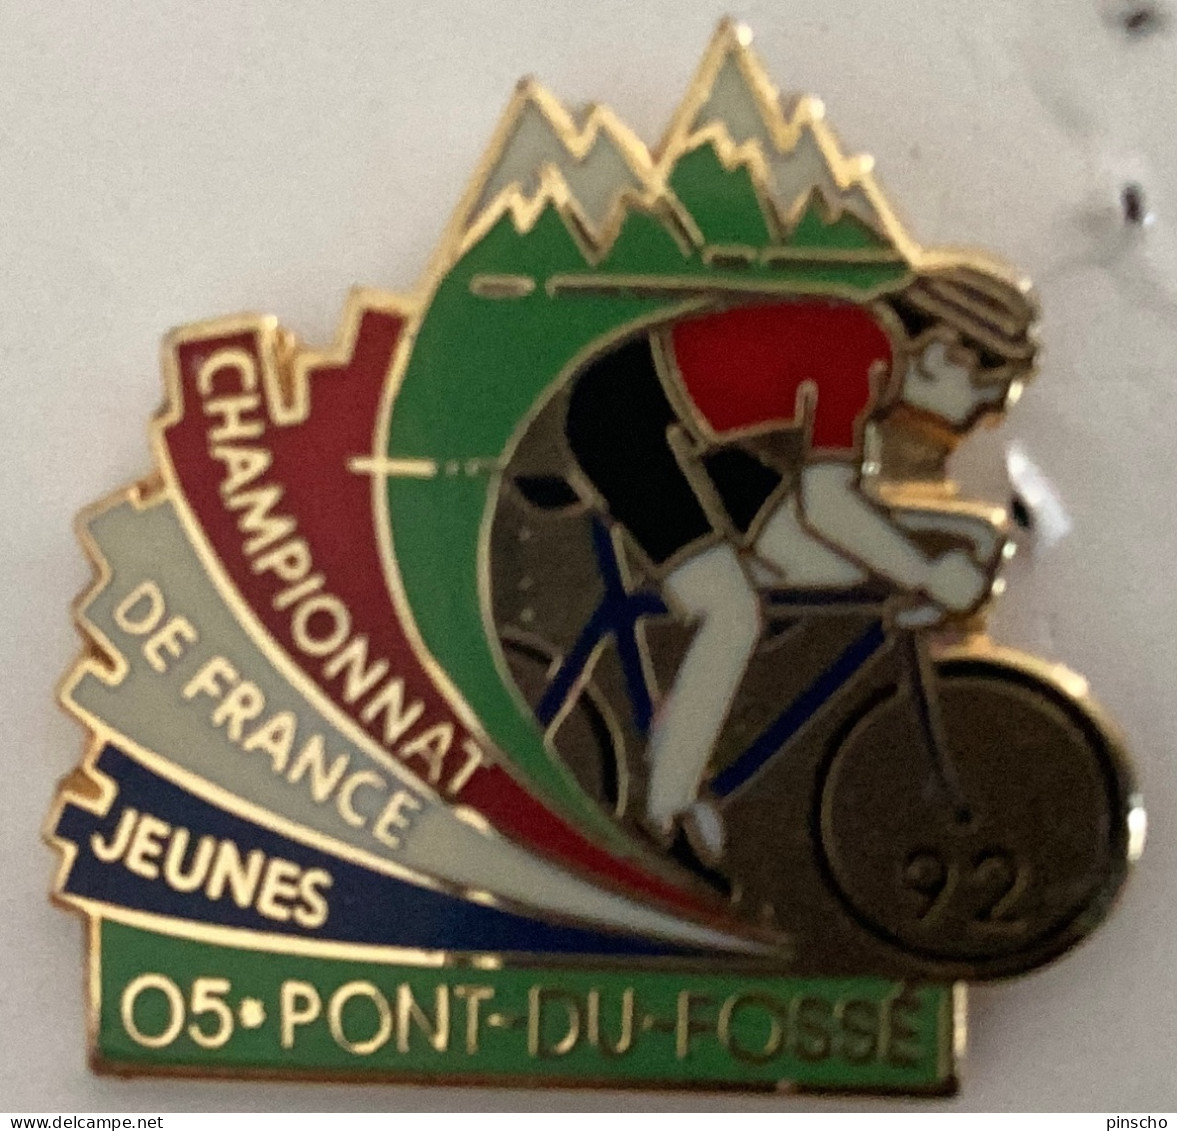 Pin S CHAMPIONNAT DE FRANCEJEUNES 92 - Radsport